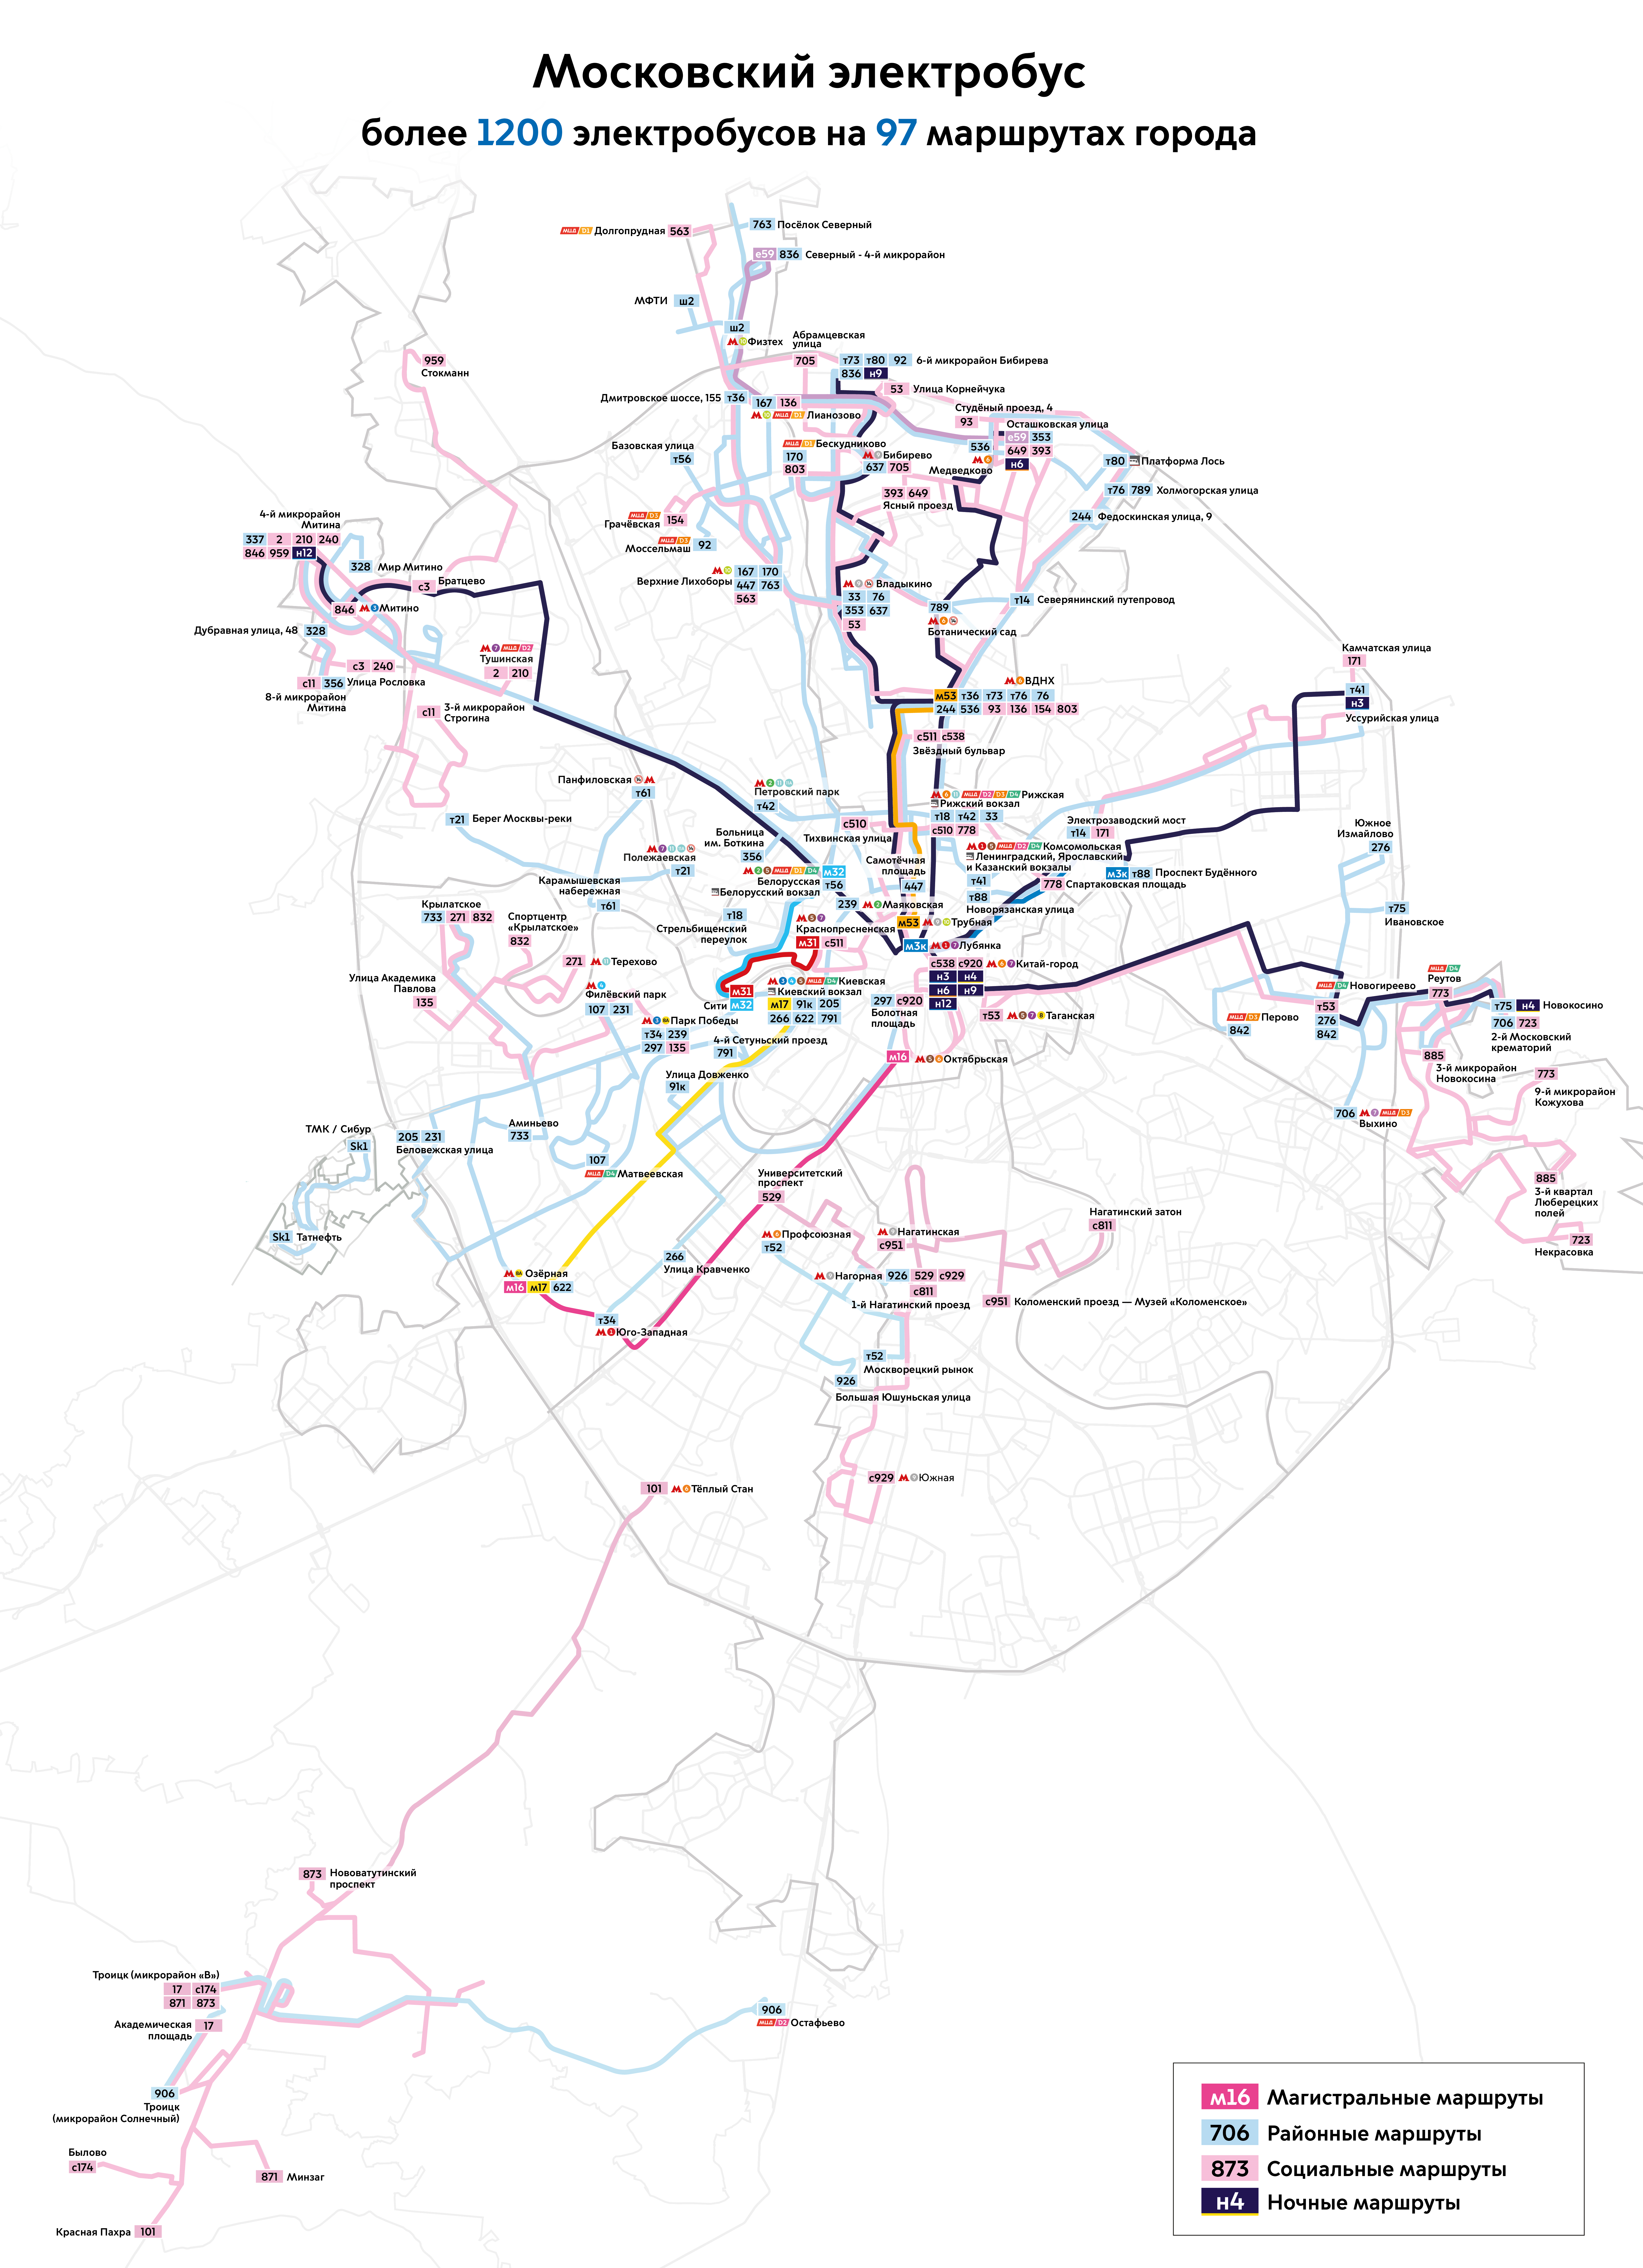 Maskava — Citywide Maps; Maskava — Maps of Autonomous Electric Bus Lines